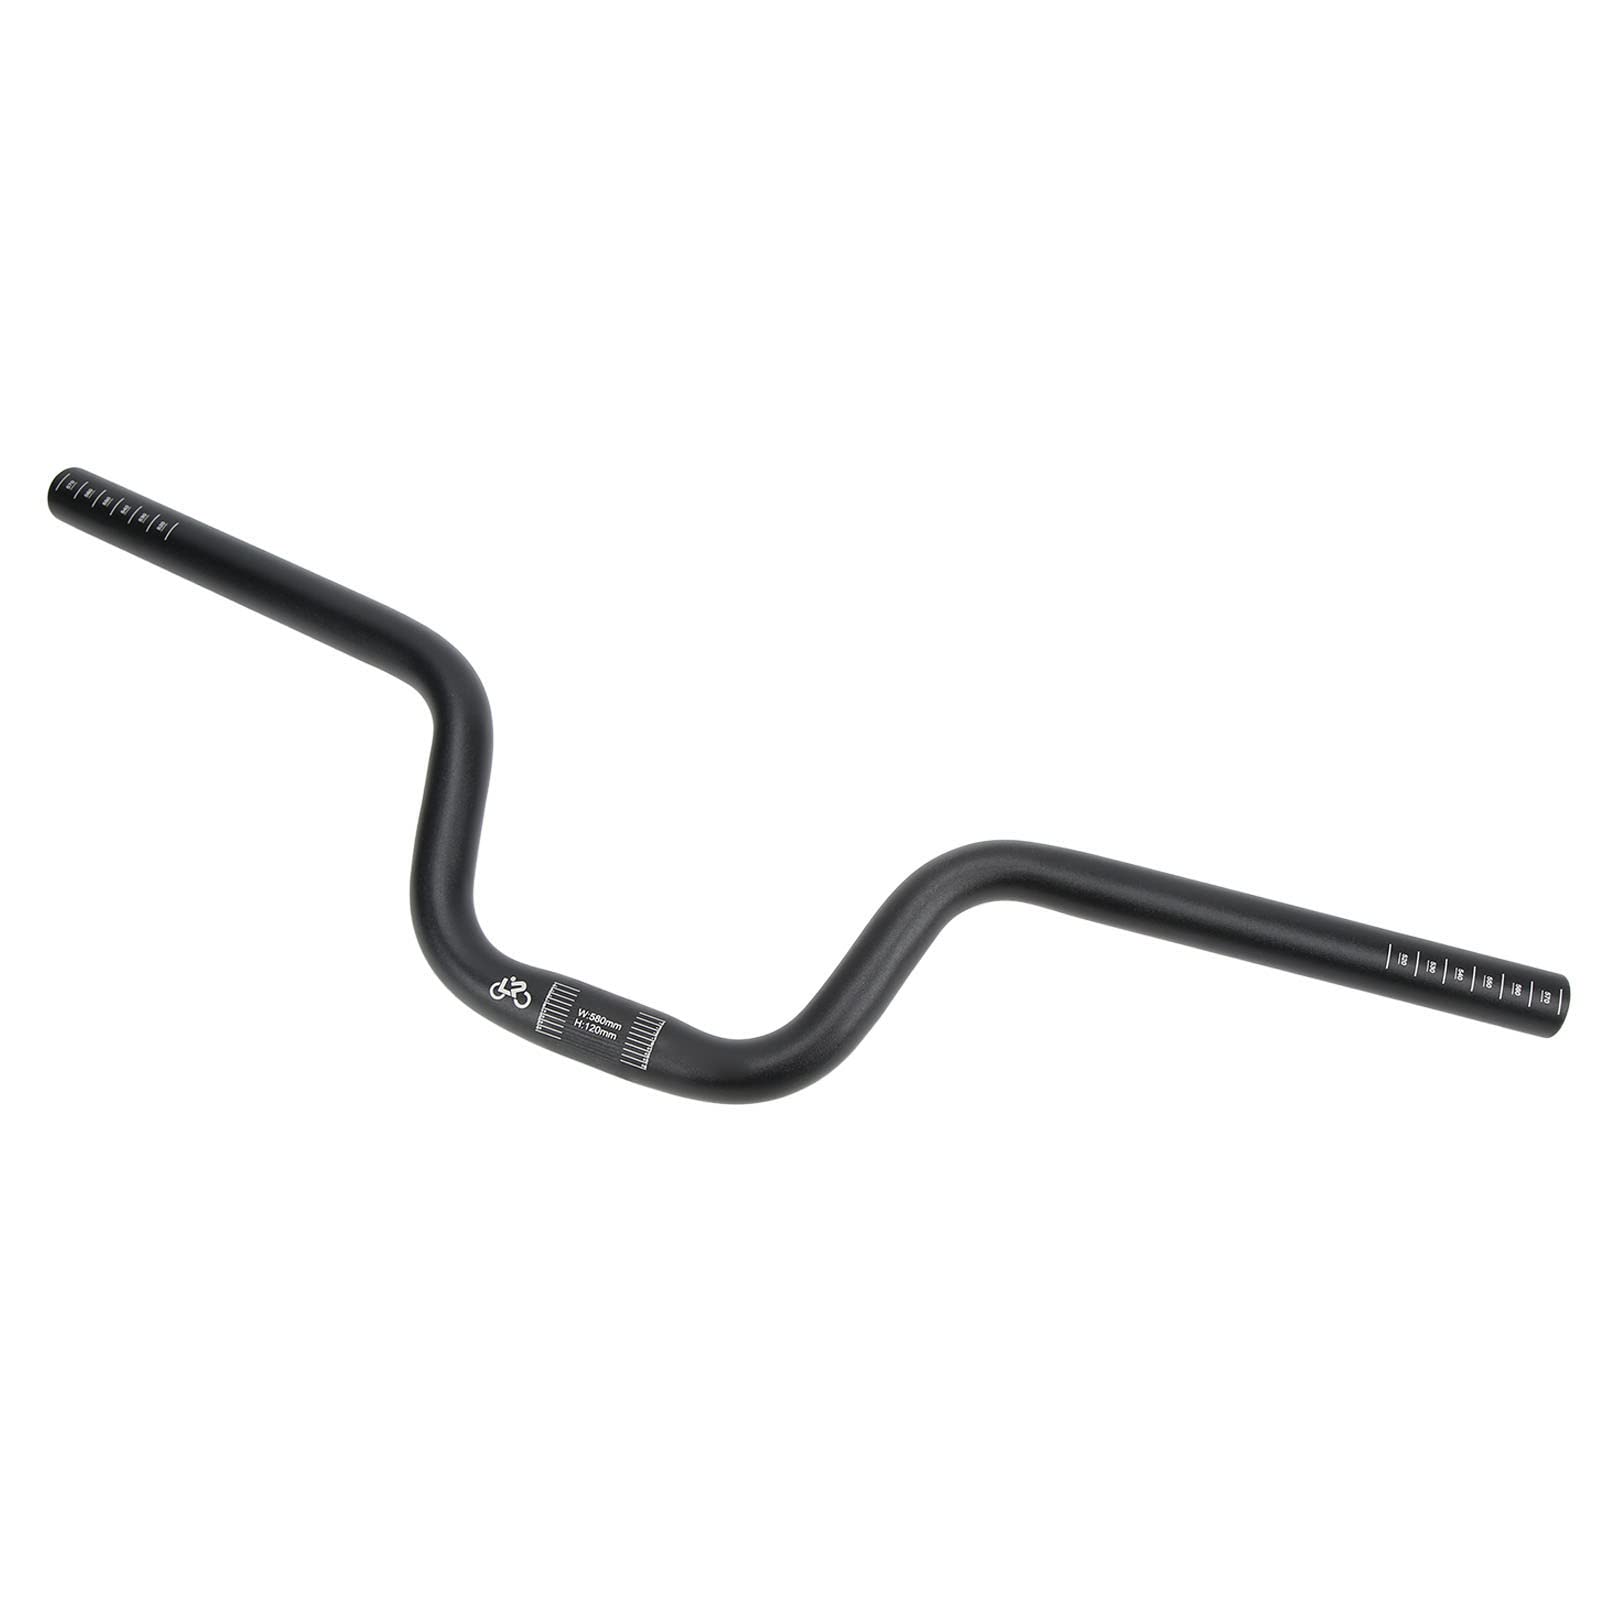 Fahrrad-Swallow-Lenker, Leichte und Elegante Aluminiumlegierung in Schwarz, 25,4 Mm Durchmesser, 22,8 Zoll Länge. Geeignet für Fahrräder (Heben Sie 120 mm an) von WGFOIP